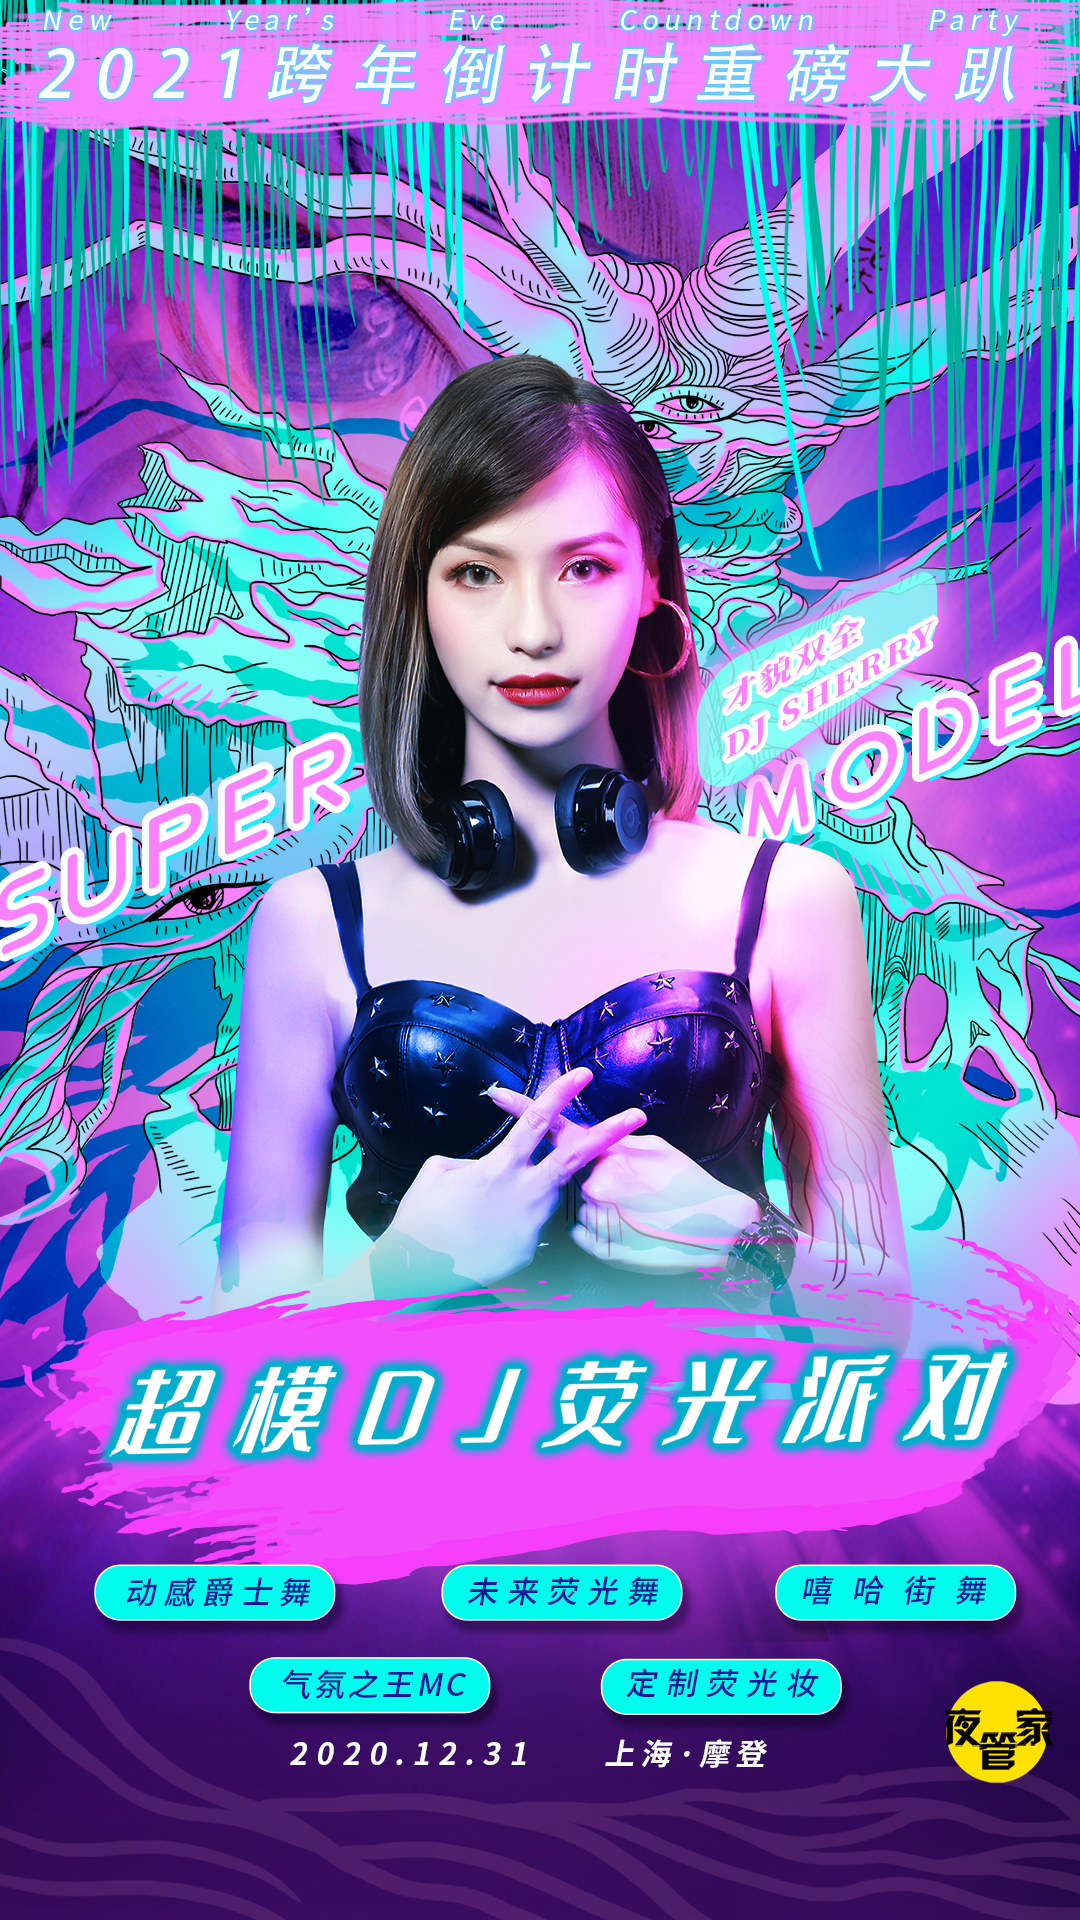 超模DJ巡演荧光派对上海站